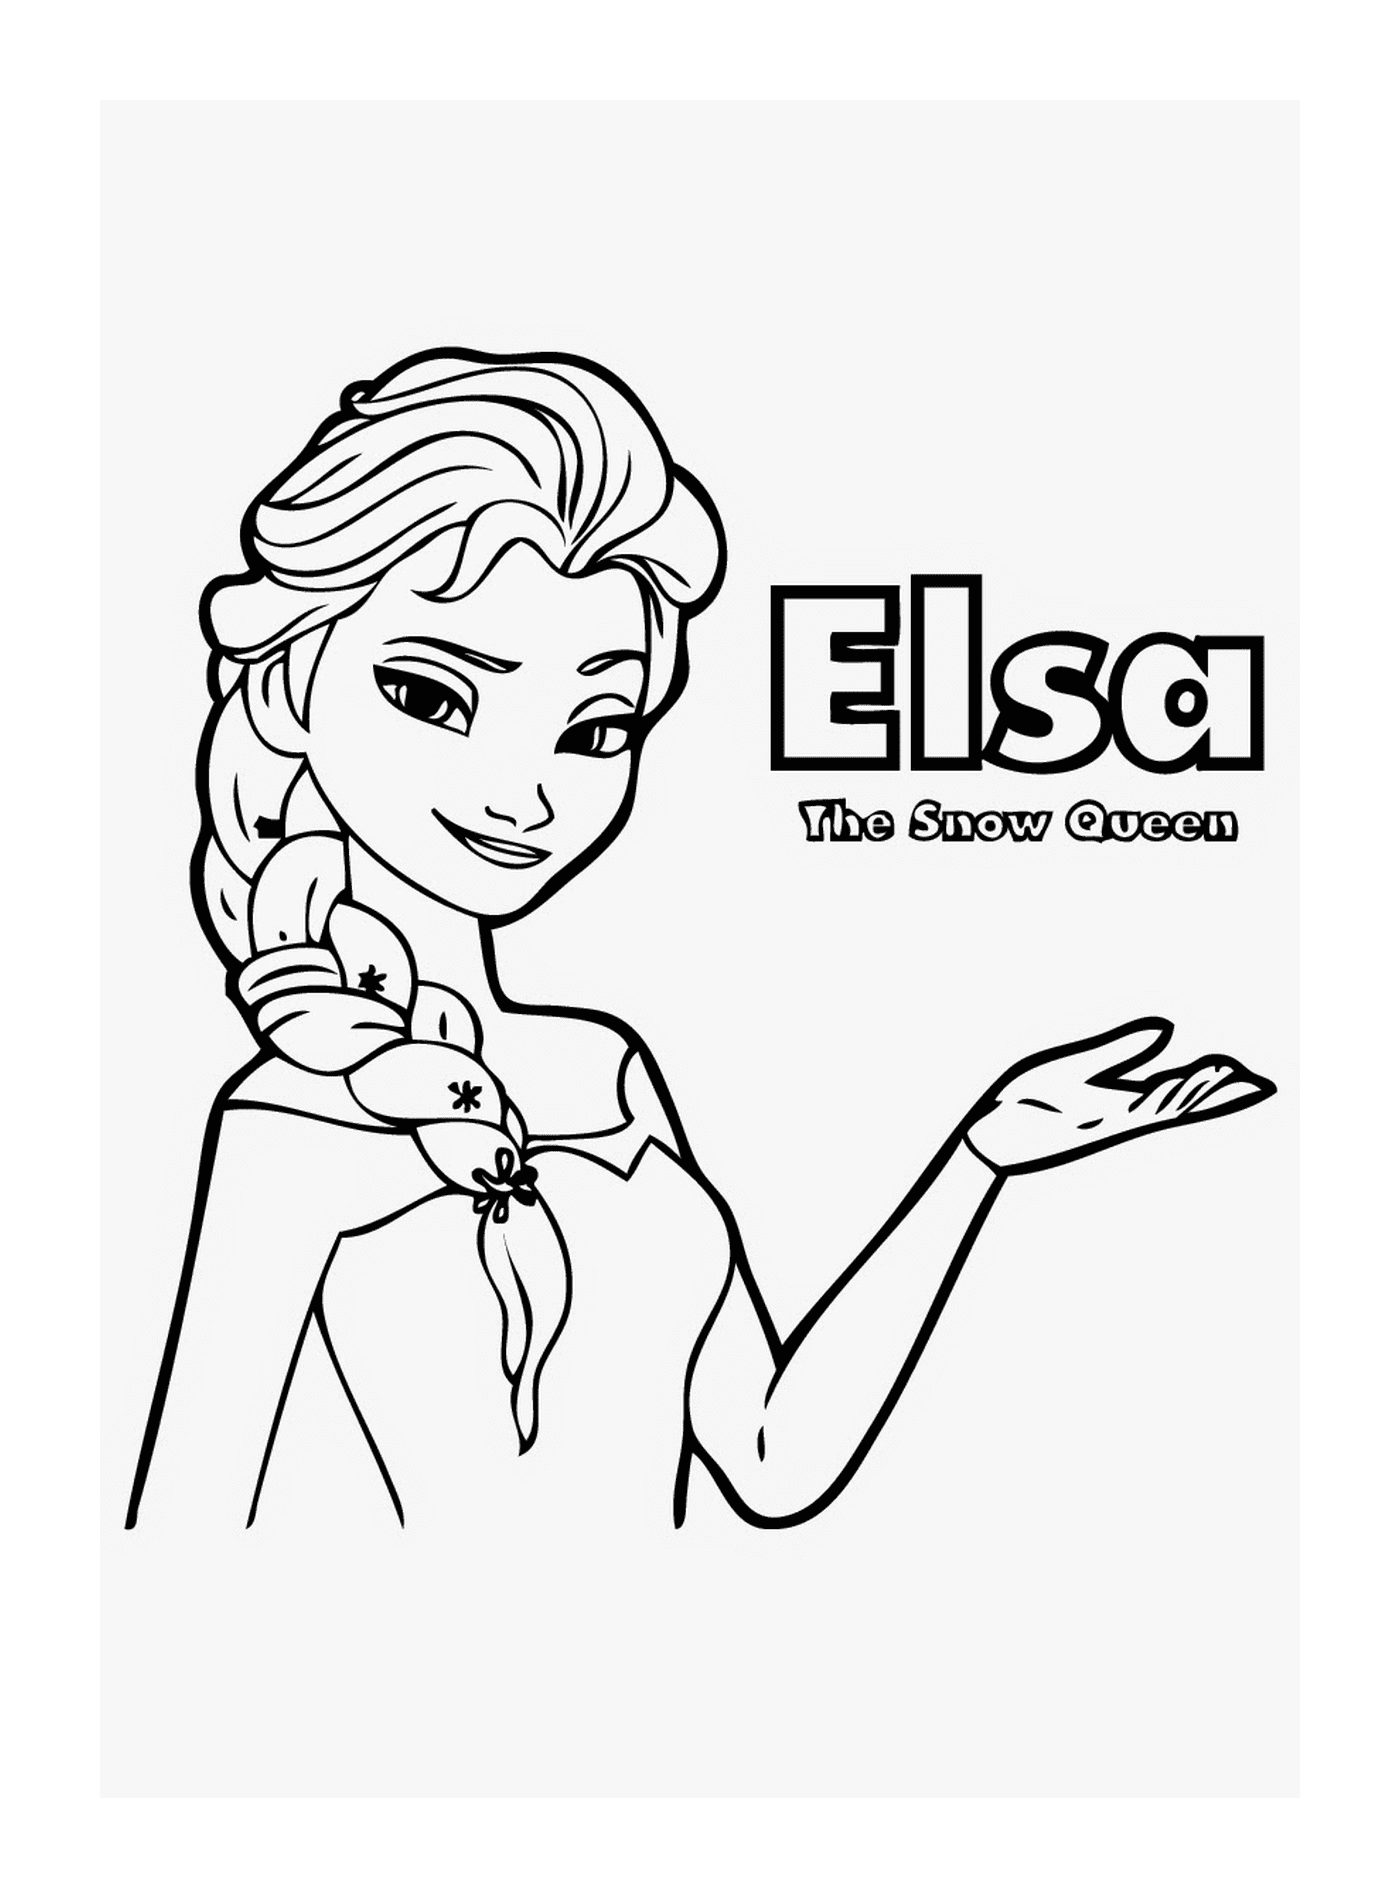  Elsa of The Snow Queen, model 